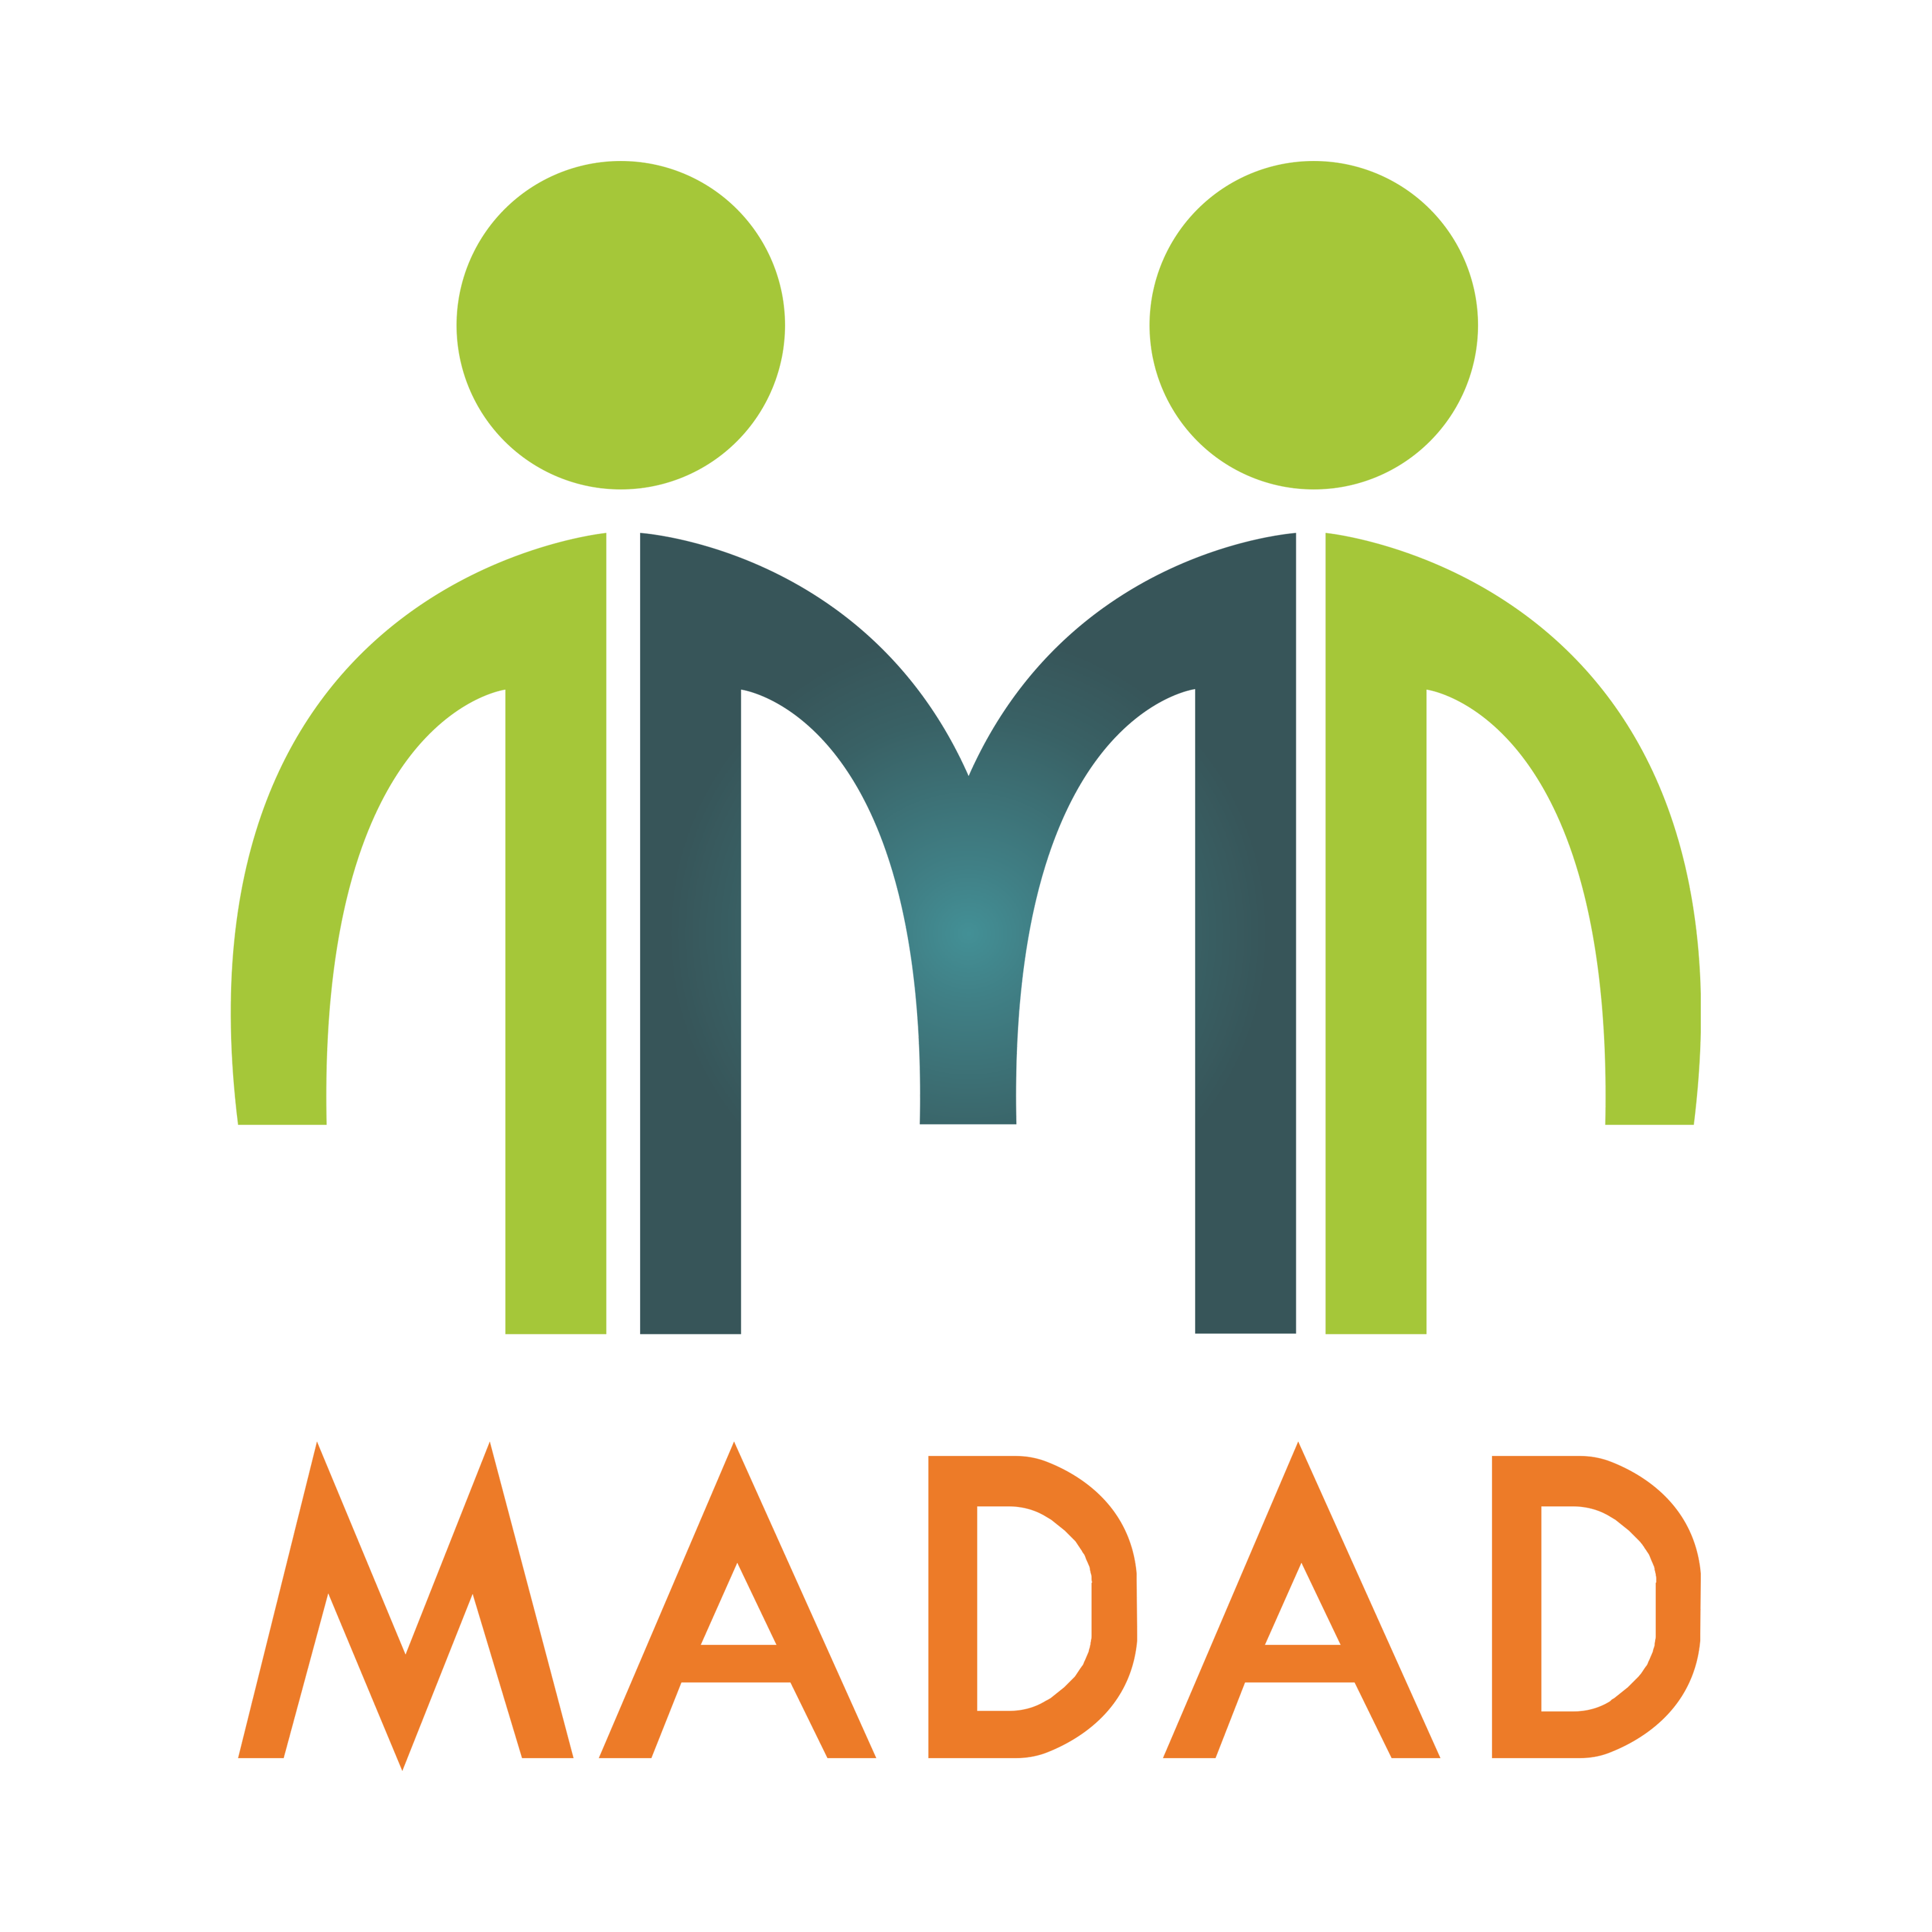 Madad Logo Transparent Image